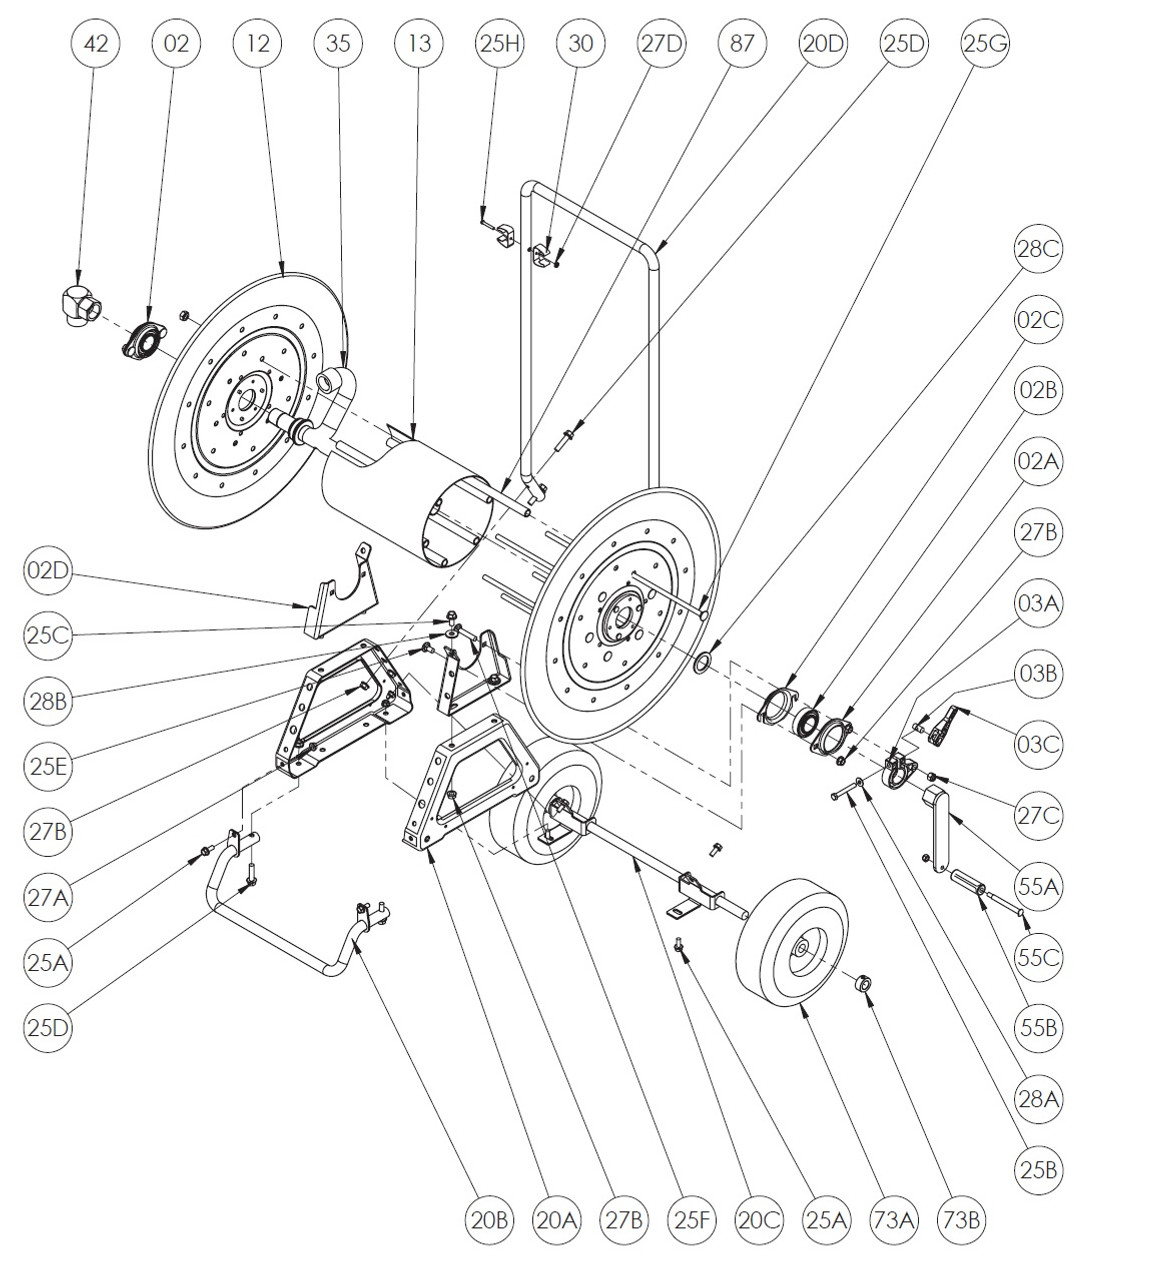 AT Series Mobile Garden Hose Reel Parts - Wheel/Tire - 73A - John